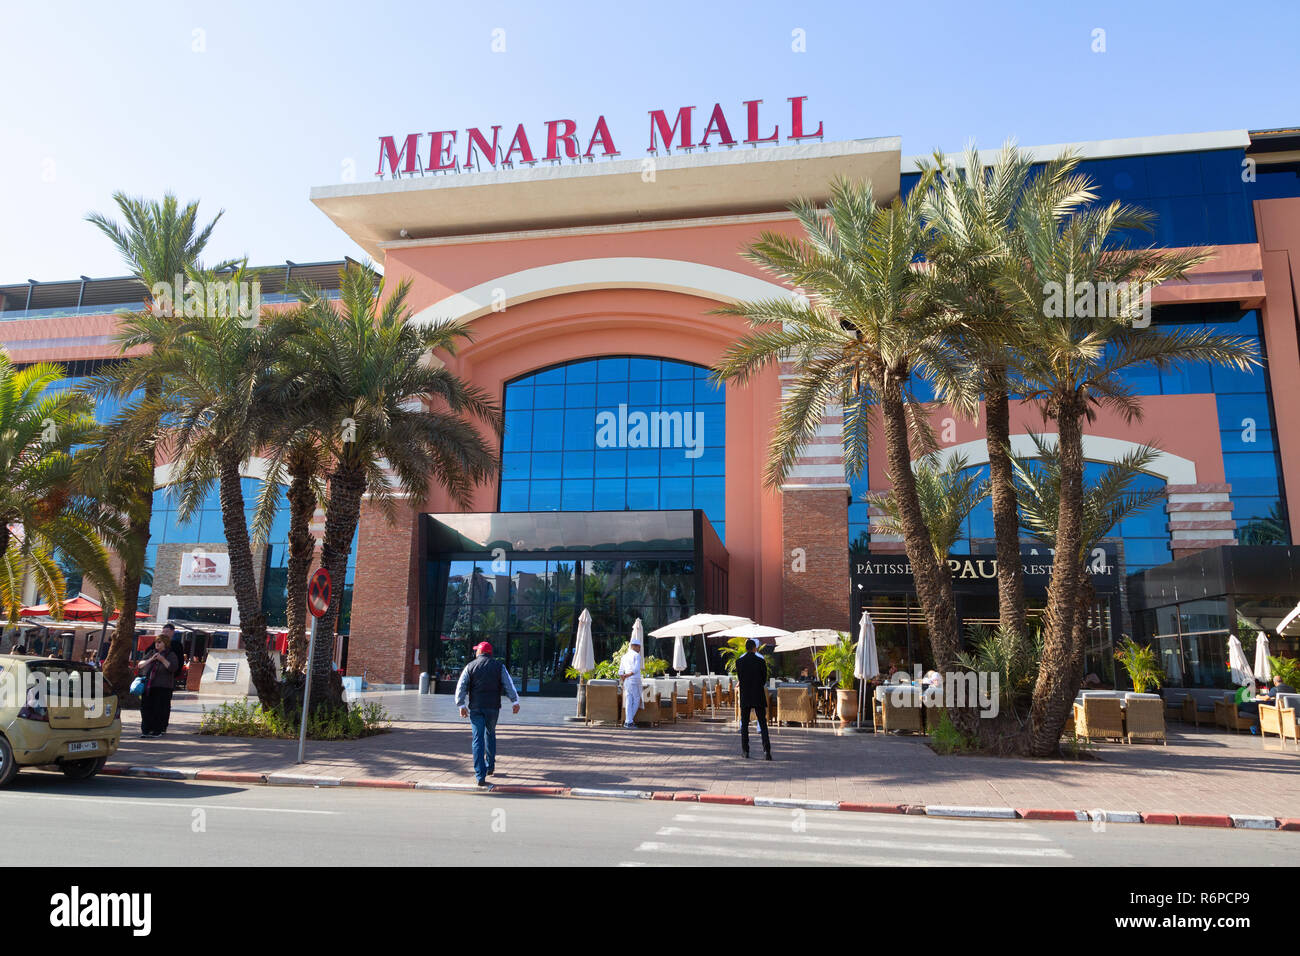 Menara Mall, ein modernes Einkaufszentrum in Marrakesch (Marrakesch), Marokko, Afrika Stockfoto